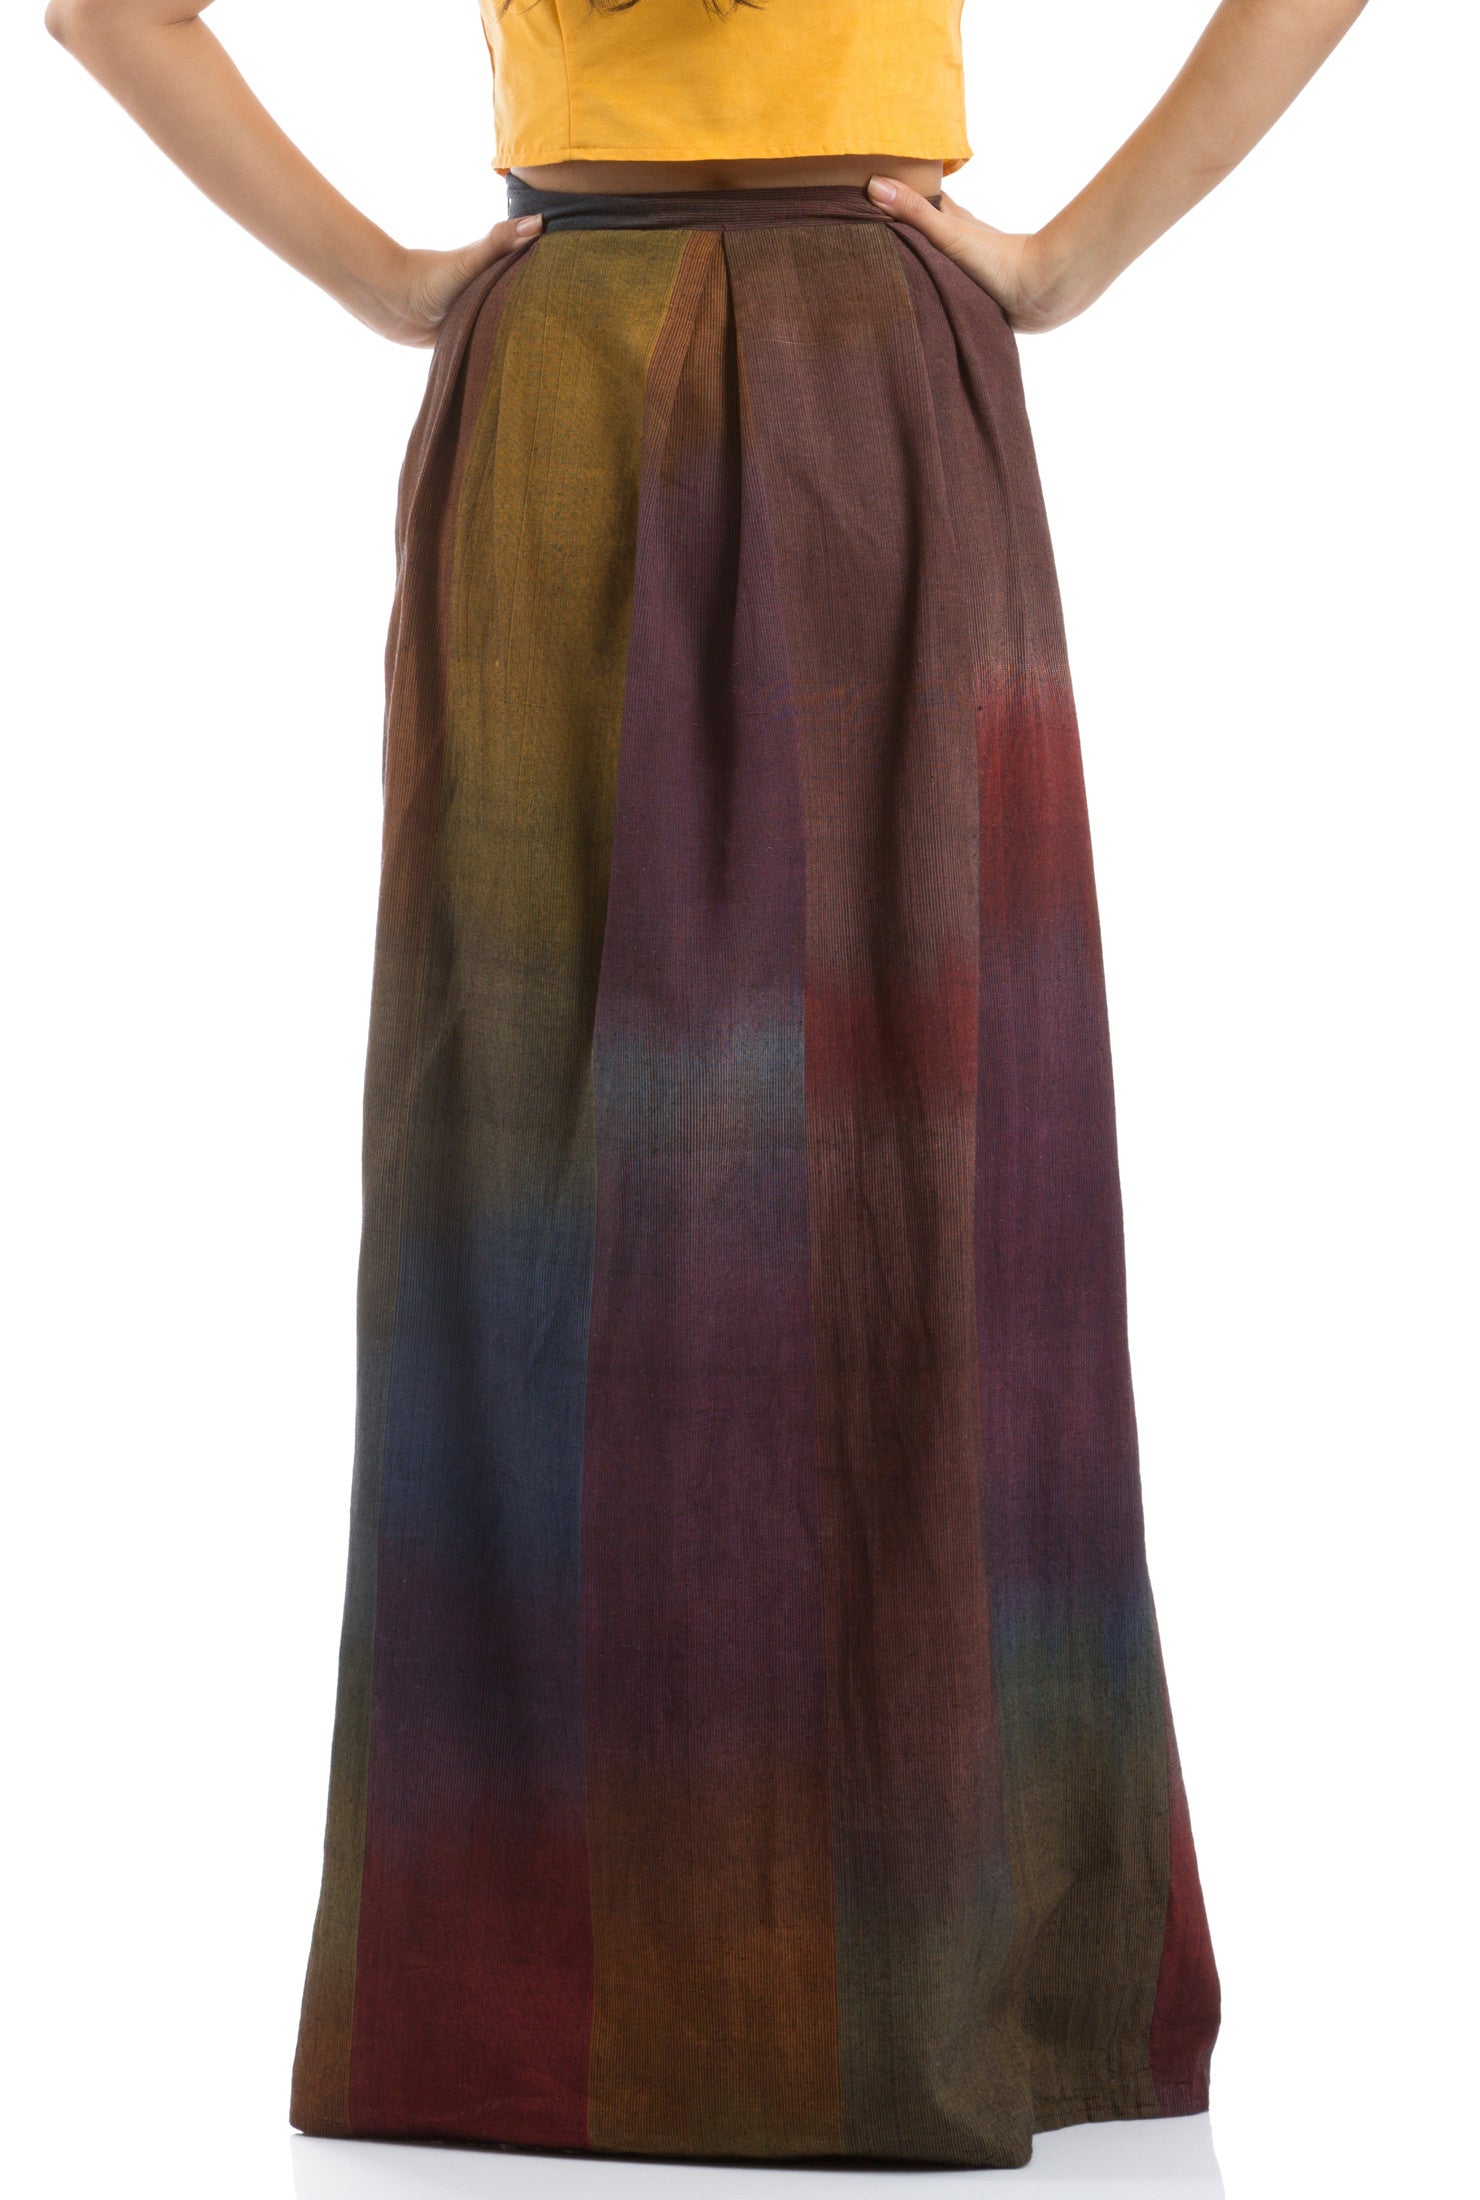 The Arabian Exotic Long Skirt